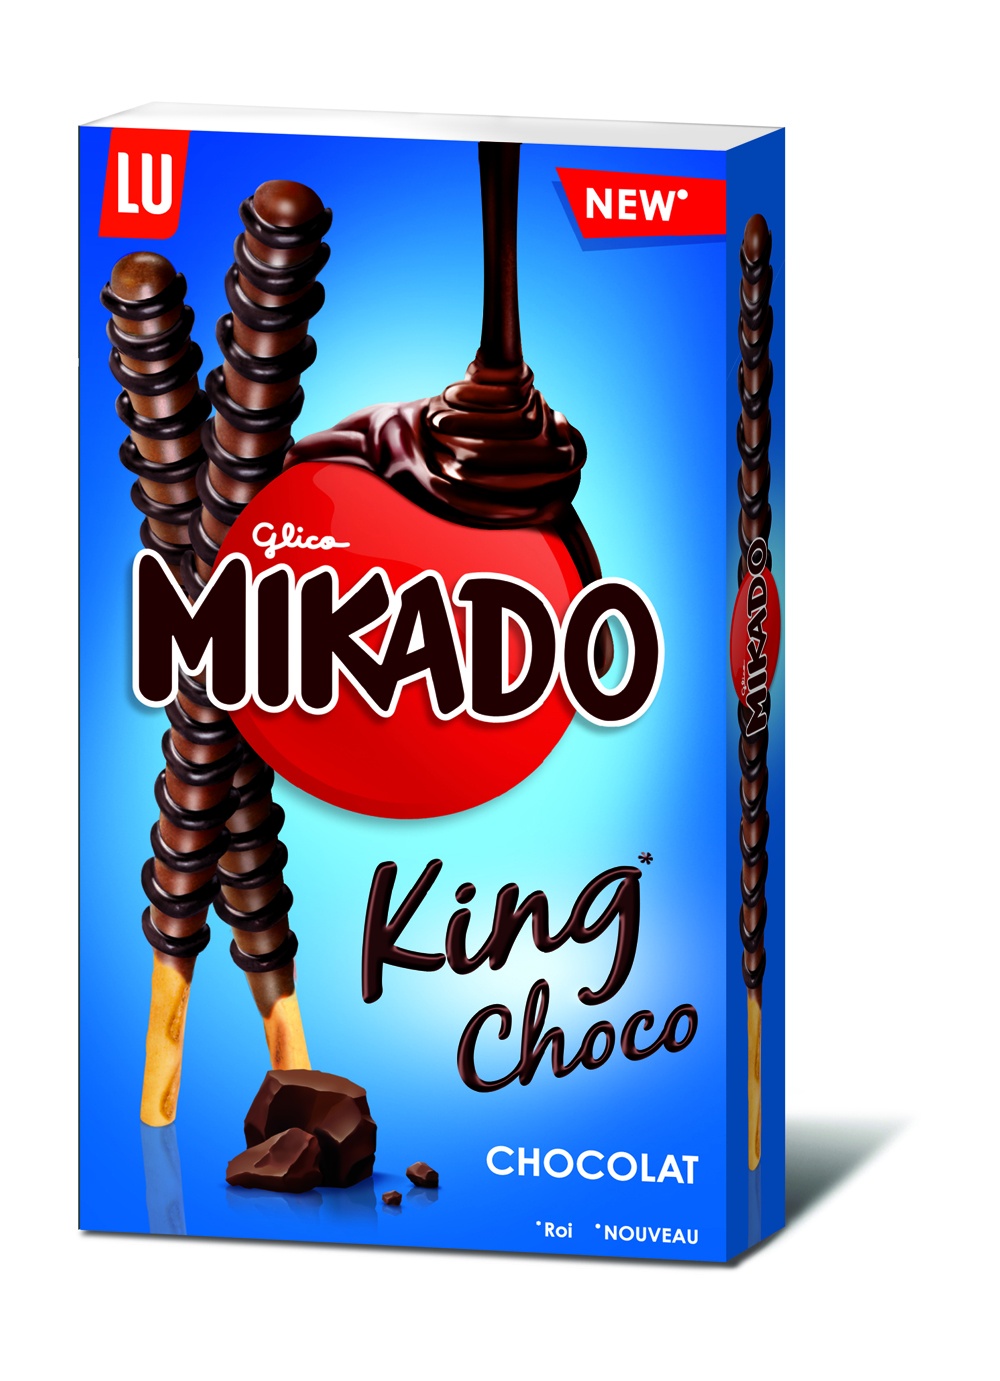 Nuevo Mikado King Choco